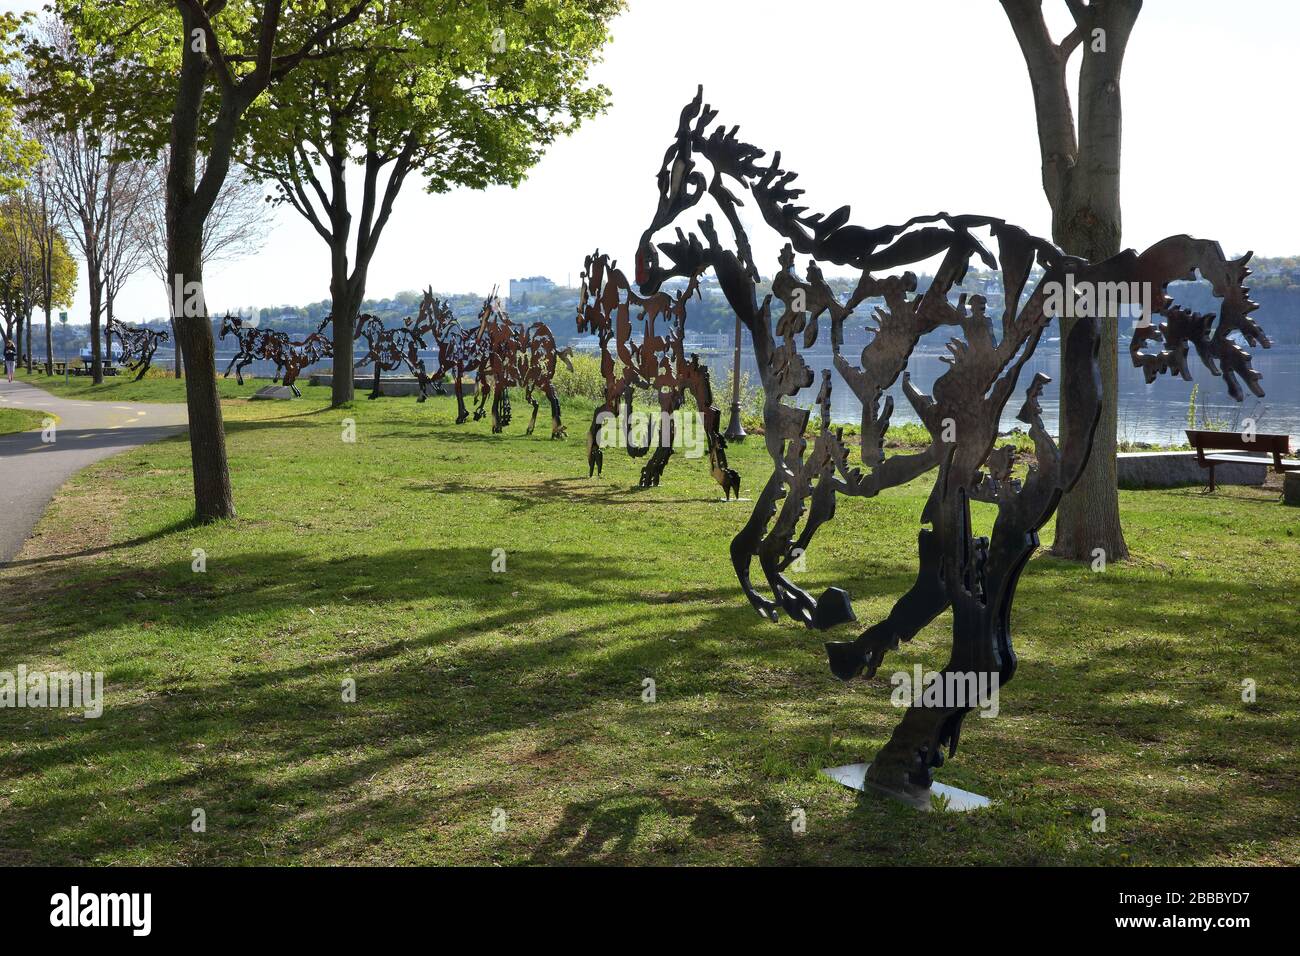 Ocho caballos de acero de tamaño real del escultor Joe Fafard, titulado 'do Re Mi Fa Sol la Si do'', cada uno con recortes que representan escenas y figuras del pasado de Quebec. Parque Notre-Dame-de-la-Garde, bulevar Champlain, Ciudad de Quebec, Quebec, Canadá Foto de stock